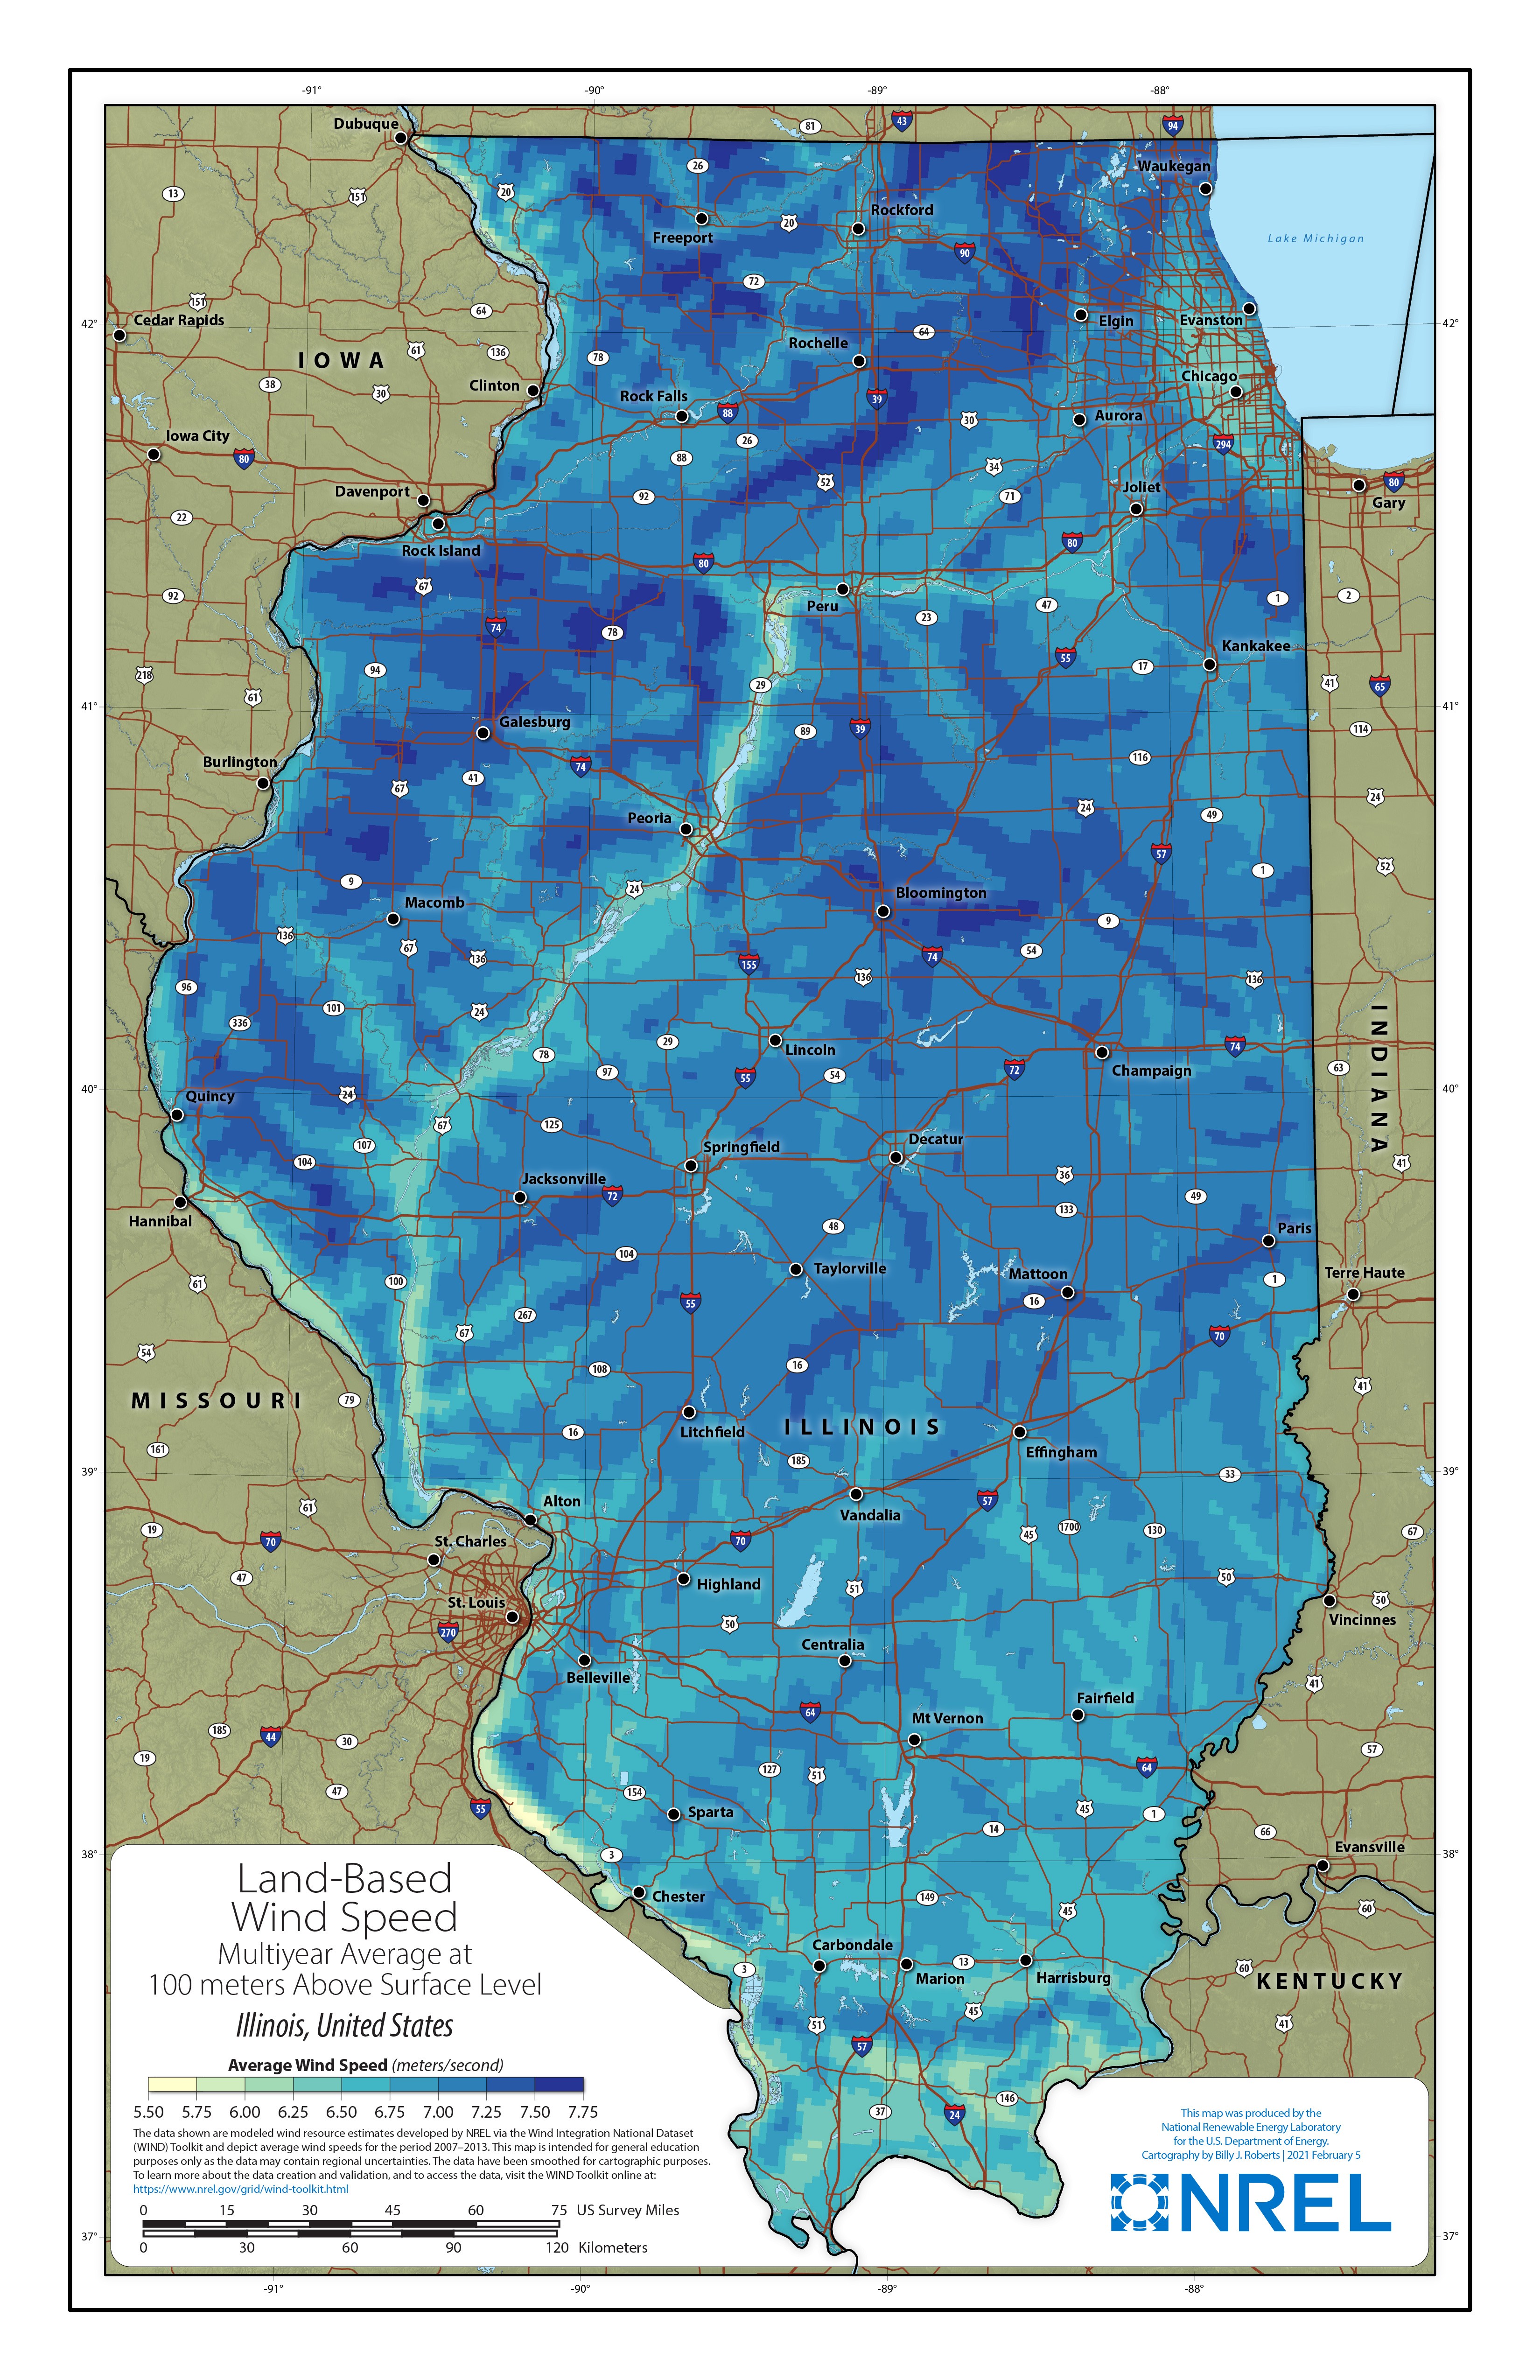 Illinois Land-Based Wind Speed at 100 Meters